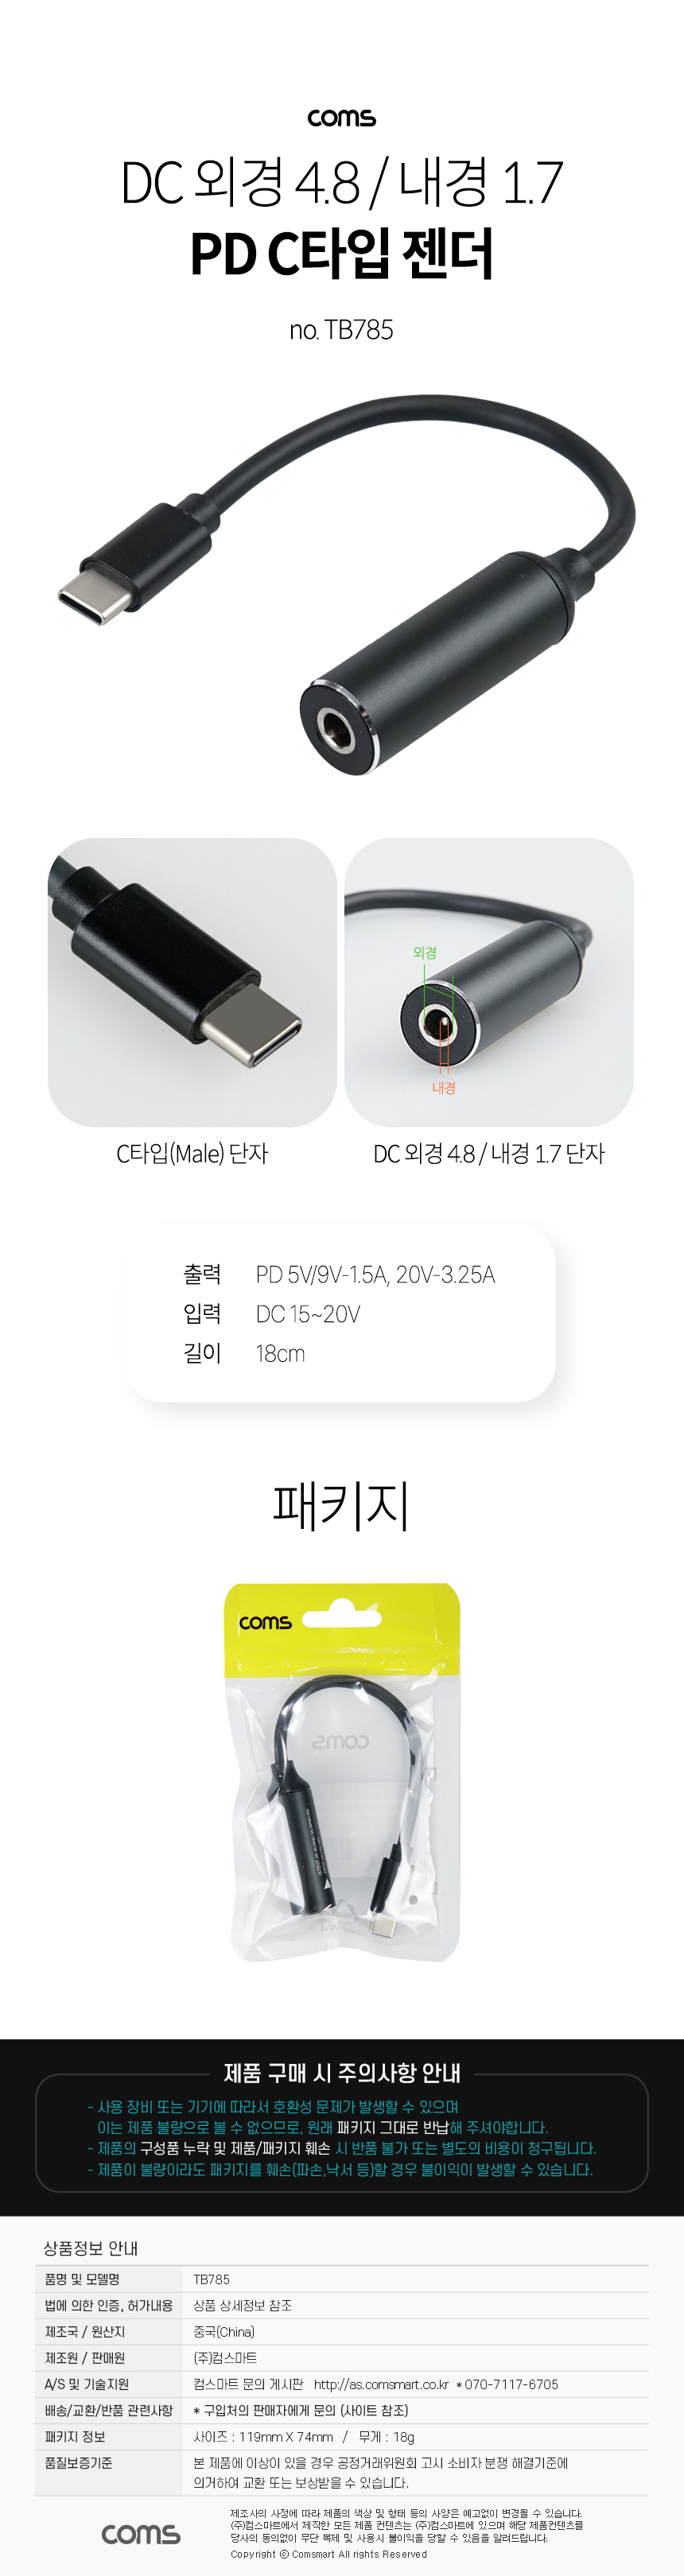 USB Type C PD 노트북 전원 변환 충전 케이블 DC 외경 4.8 내경 1.7 C타입 18cm